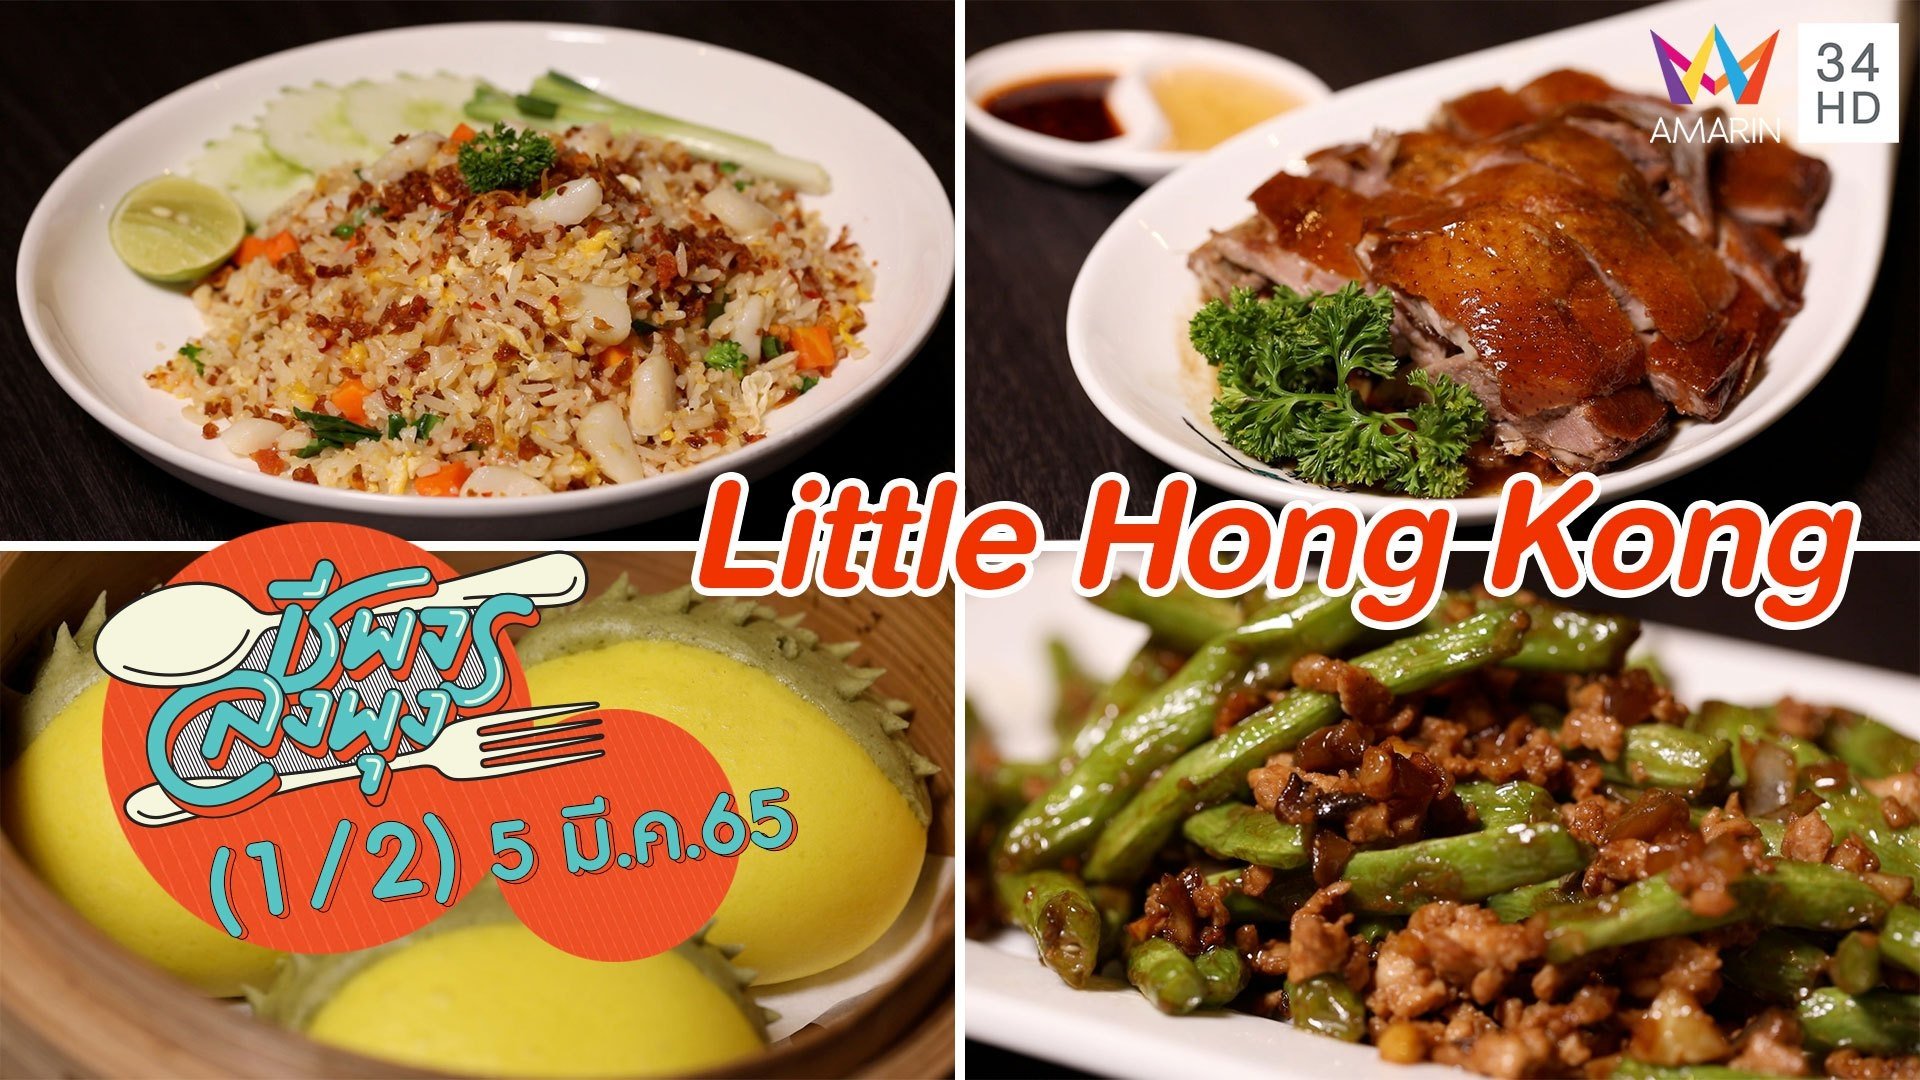 อาหารจีนสไตล์ฮ่องกงสูตรต้นตำรับ @ ร้าน Little Hong Kong | ชีพจรลงพุง | 5 มี.ค. 65 (1/2) | AMARIN TVHD34